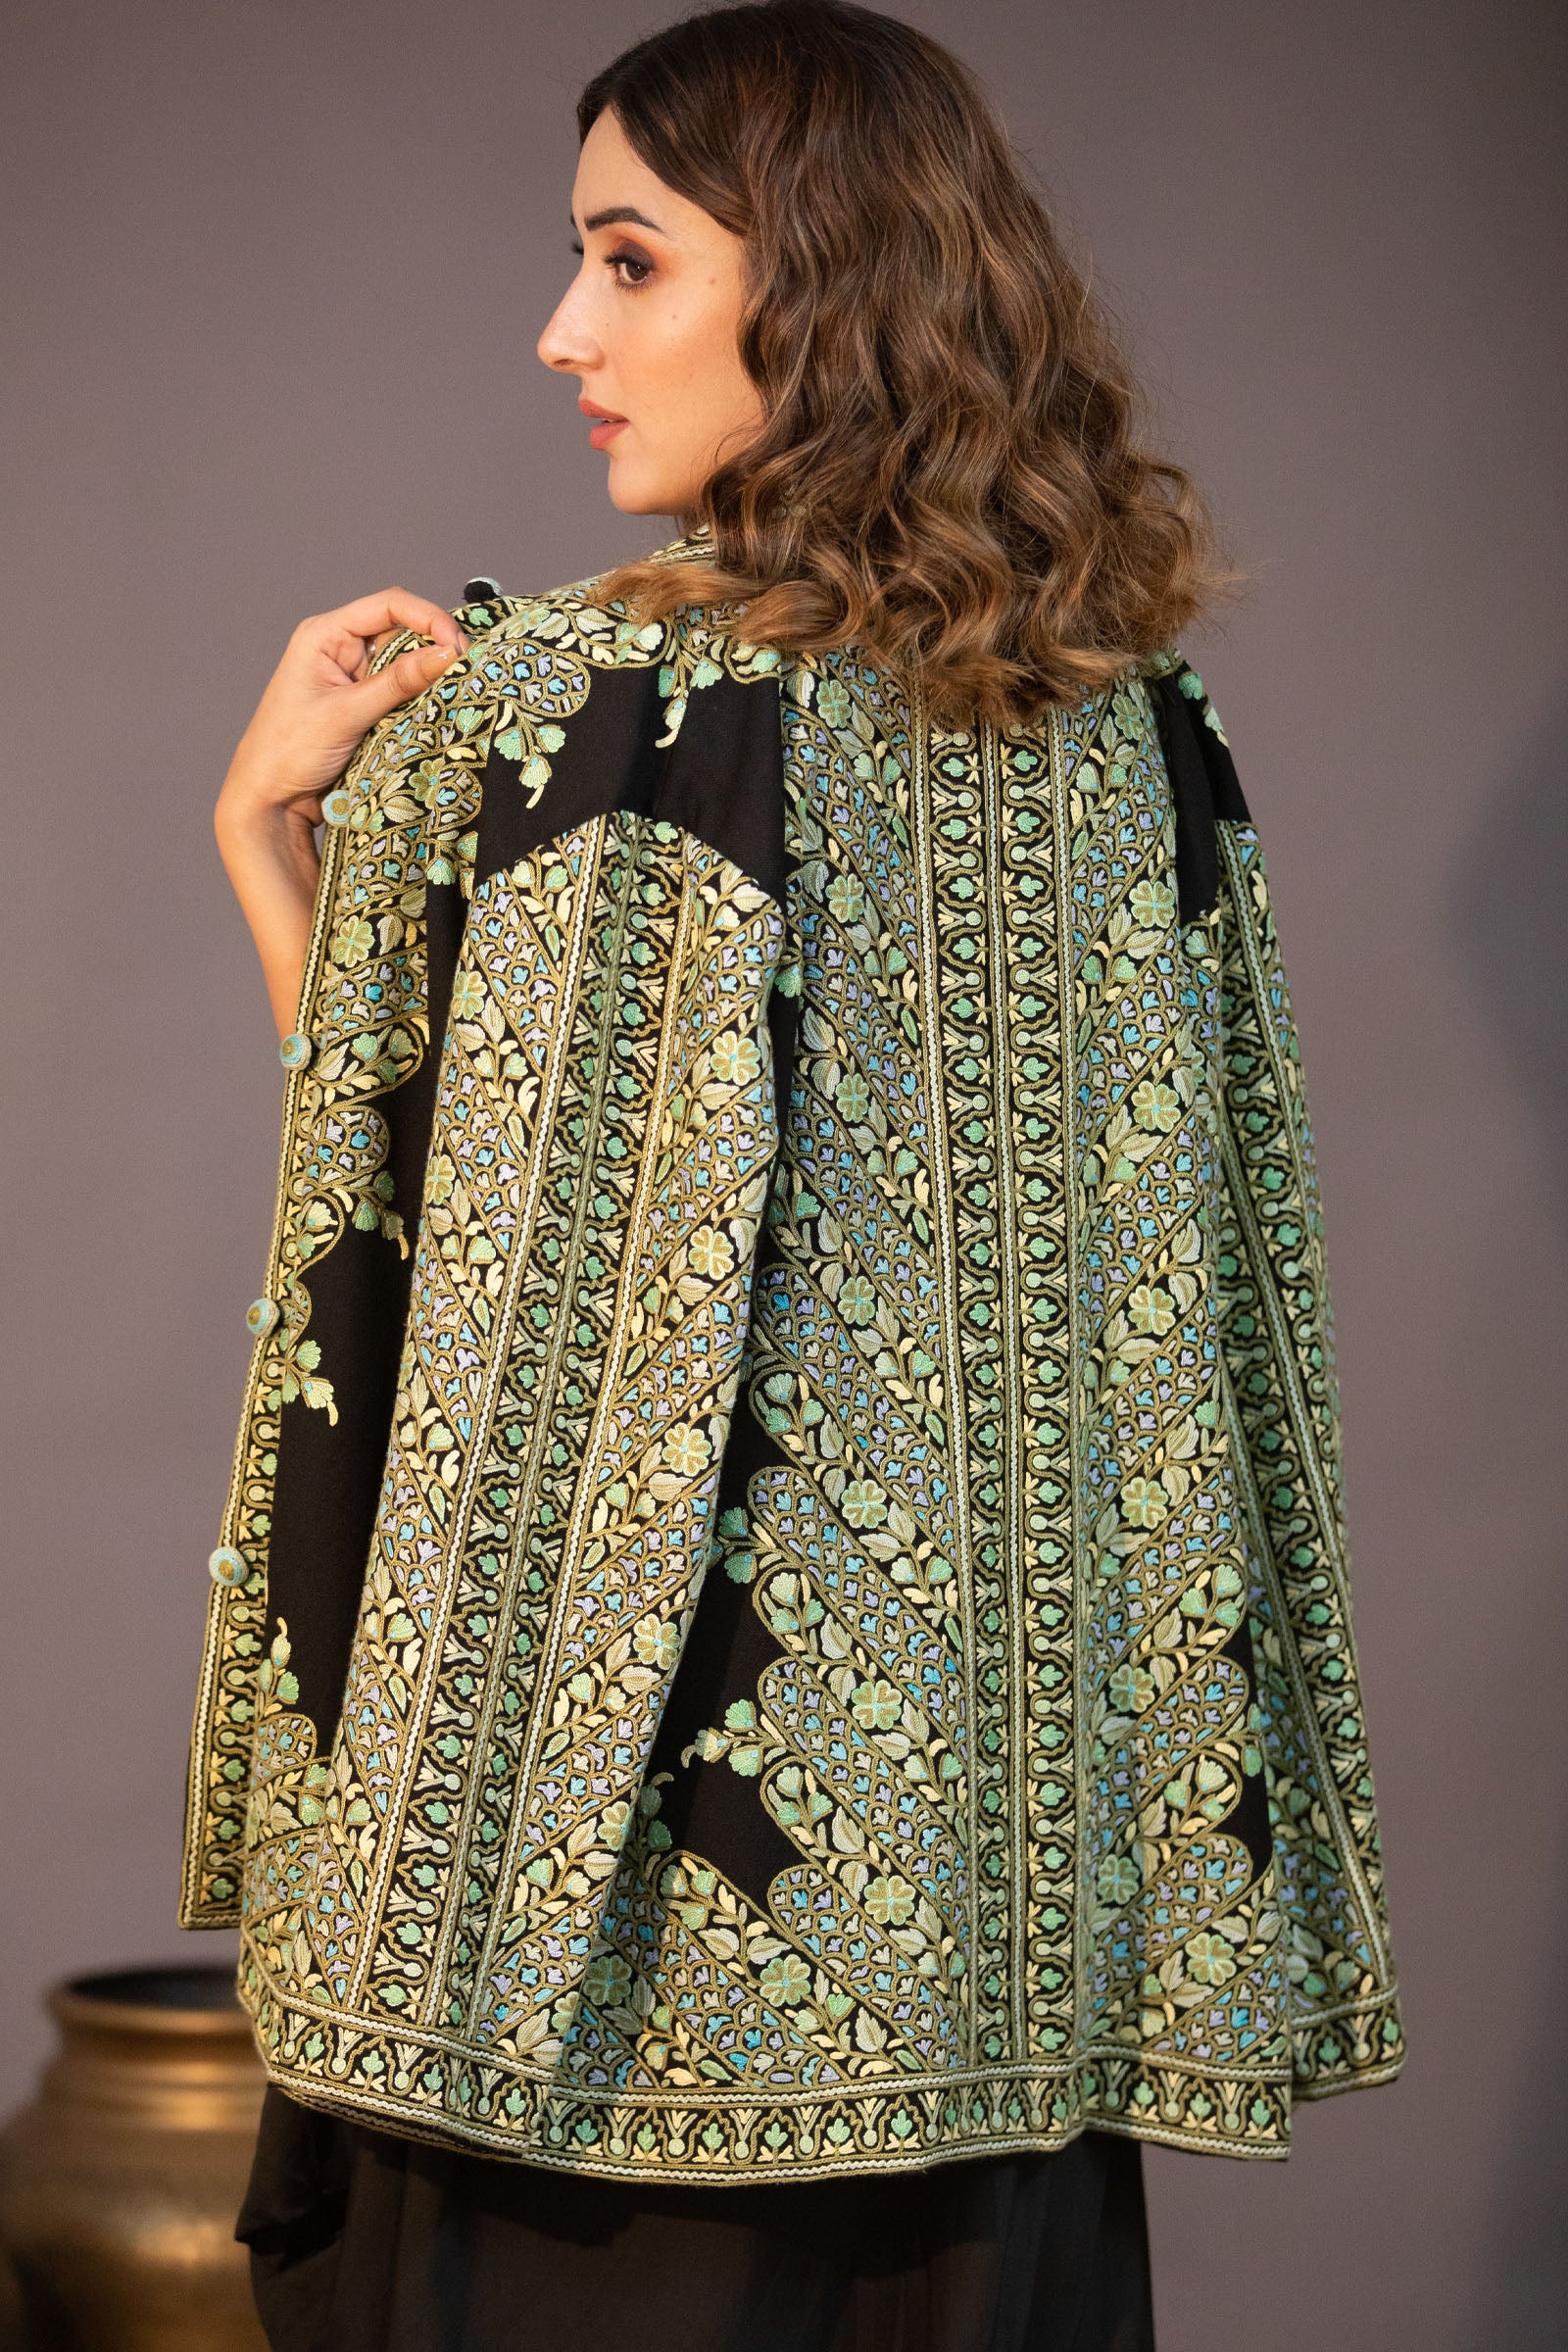 Kashmiri Jamawar Jacket with Aari Embroidery | eBay